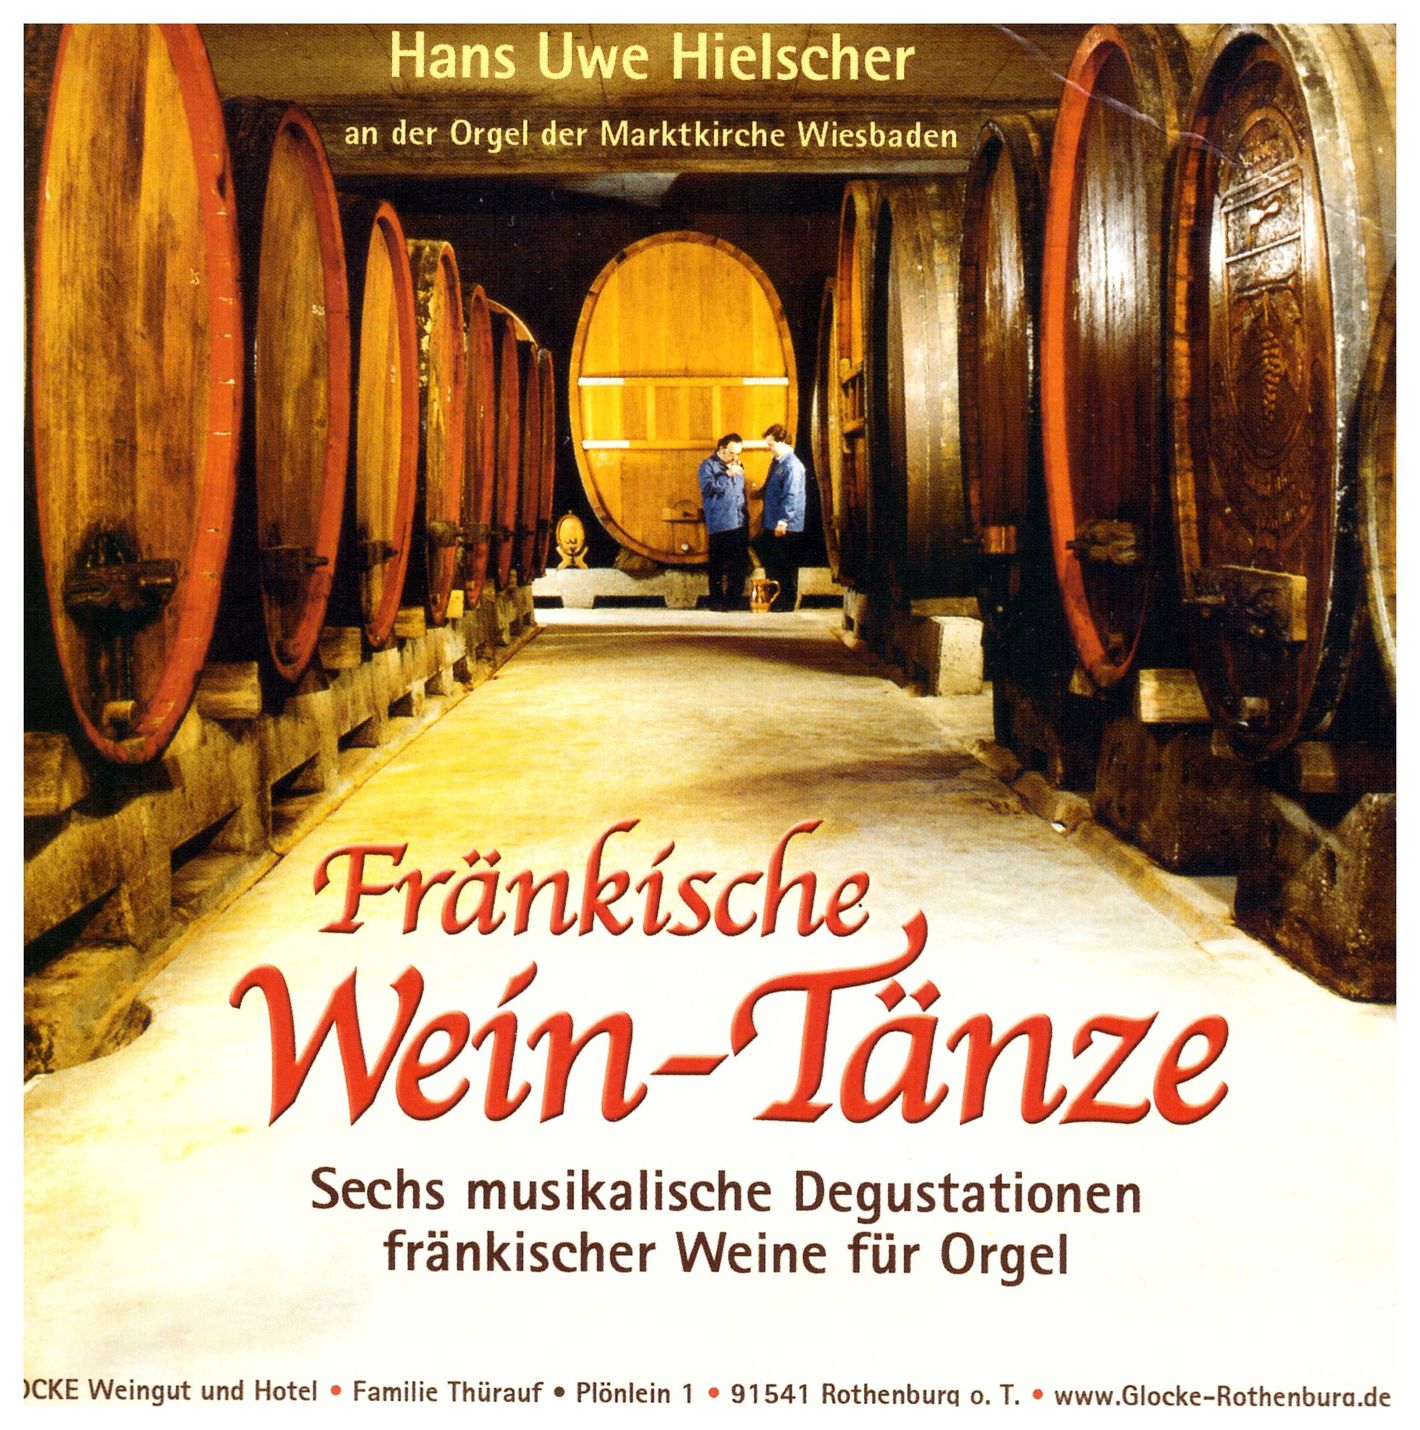 Hielscher: Fränkische Wein-Tänze